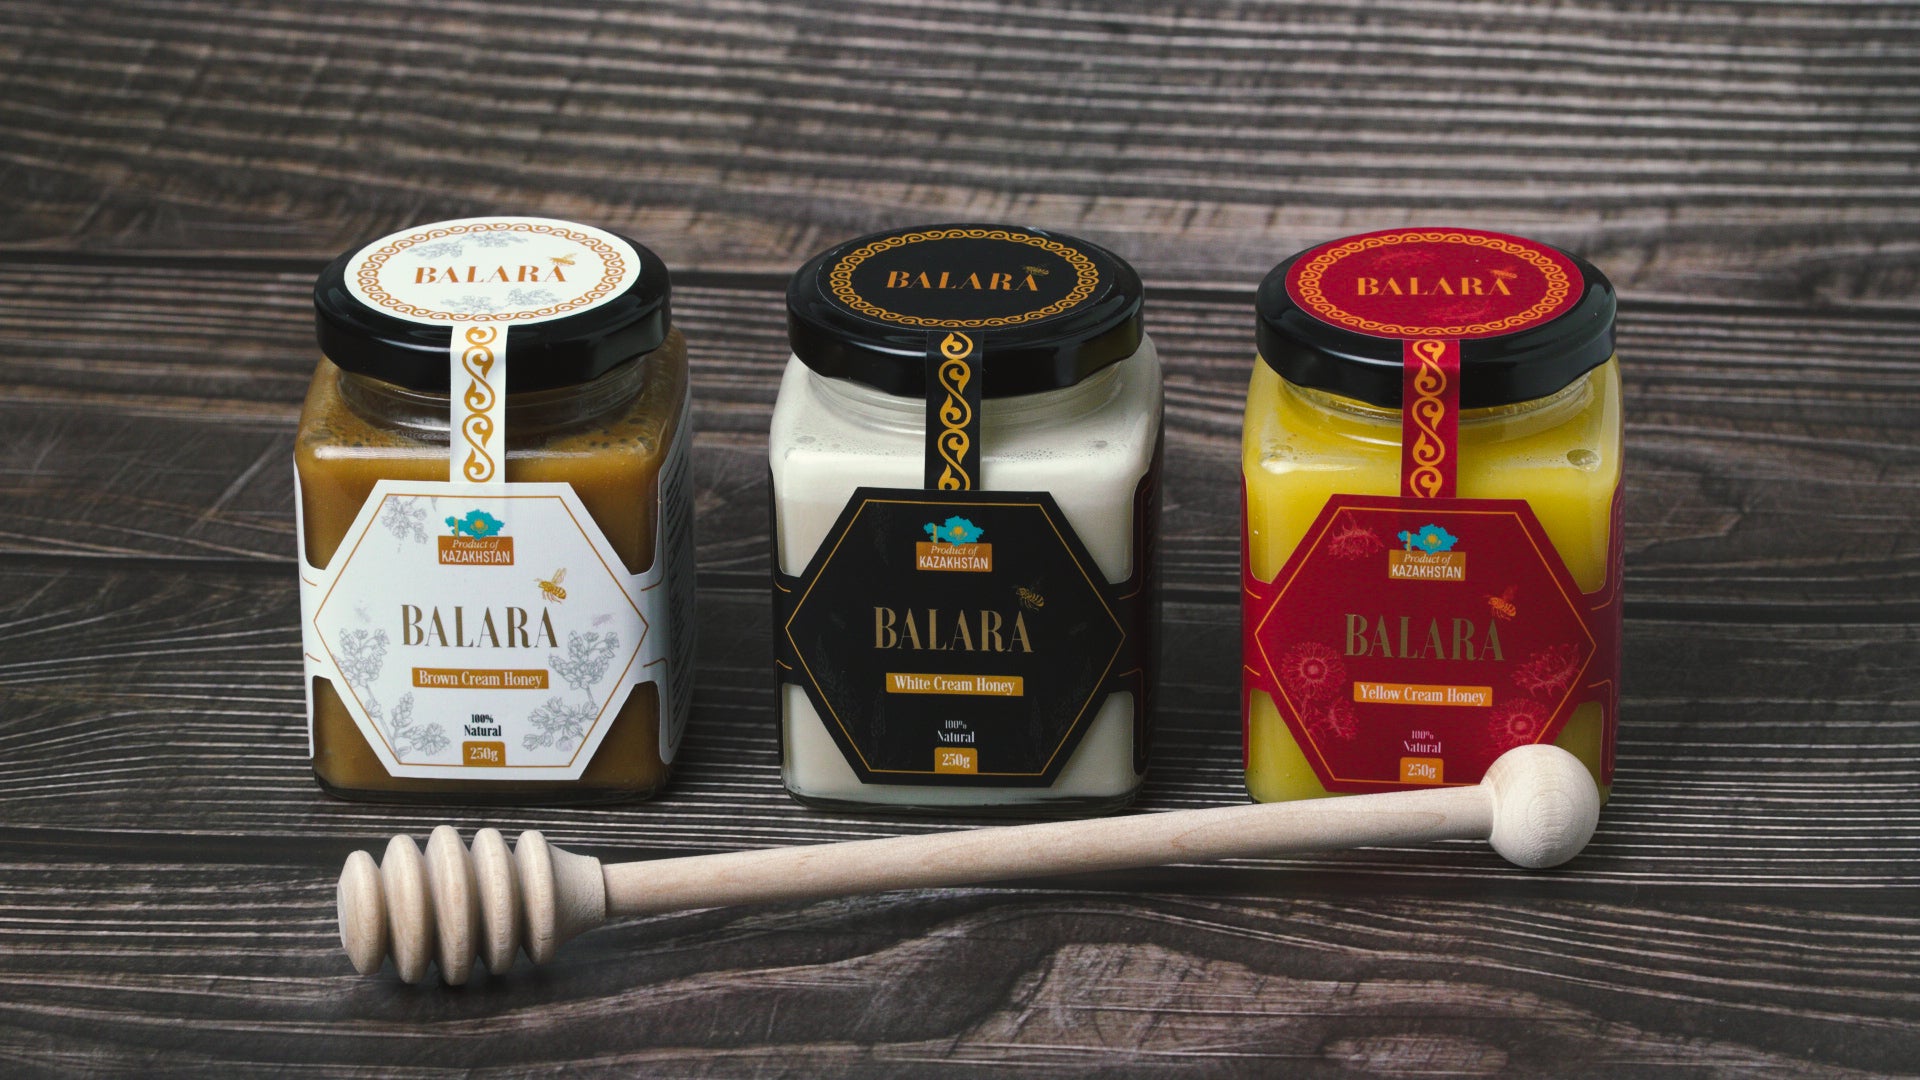 Balara 100% organic cream honey 